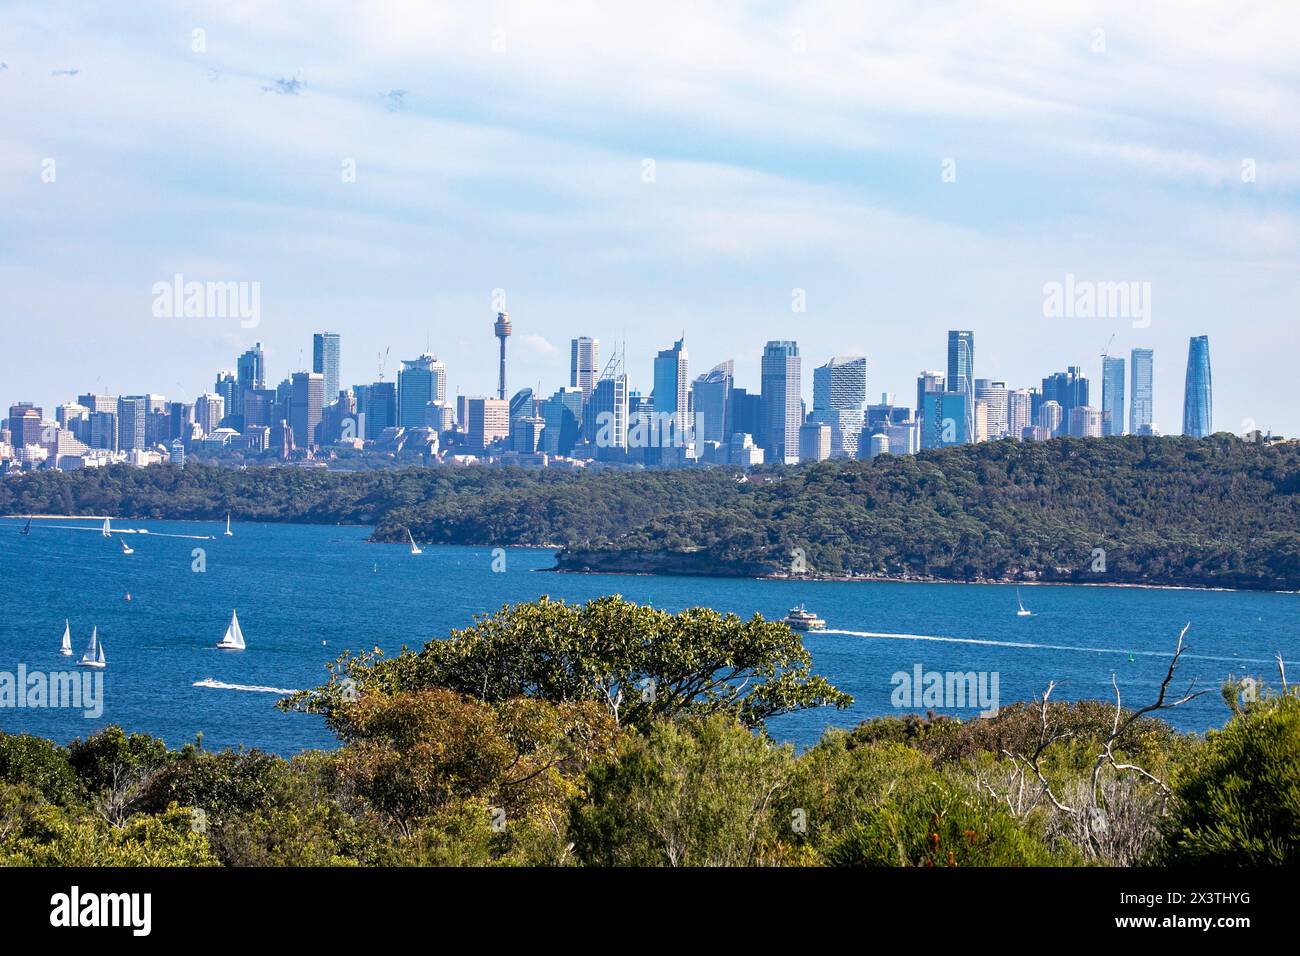 Skyline und Stadtansicht im Stadtzentrum von Sydney von North Head Manly aus, über den Hafen von Sydney und Sydney Heads, NSW, Australien Stockfoto